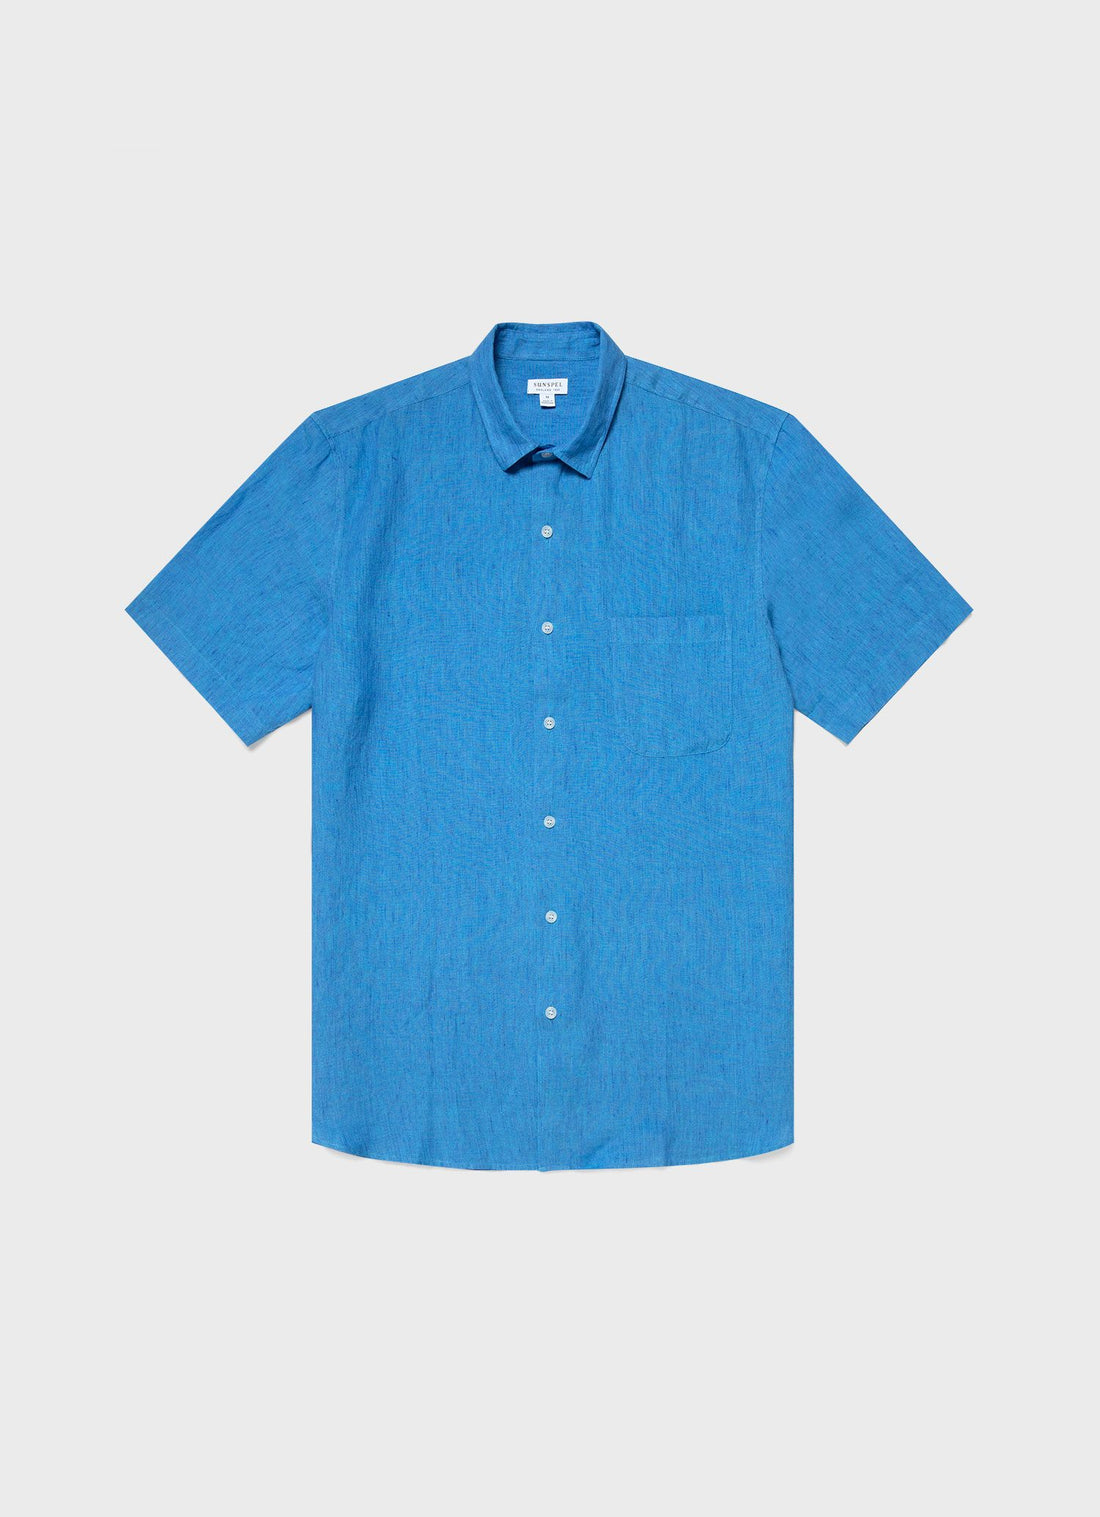 Men's Short Sleeve Linen Shirt in Lake Blue